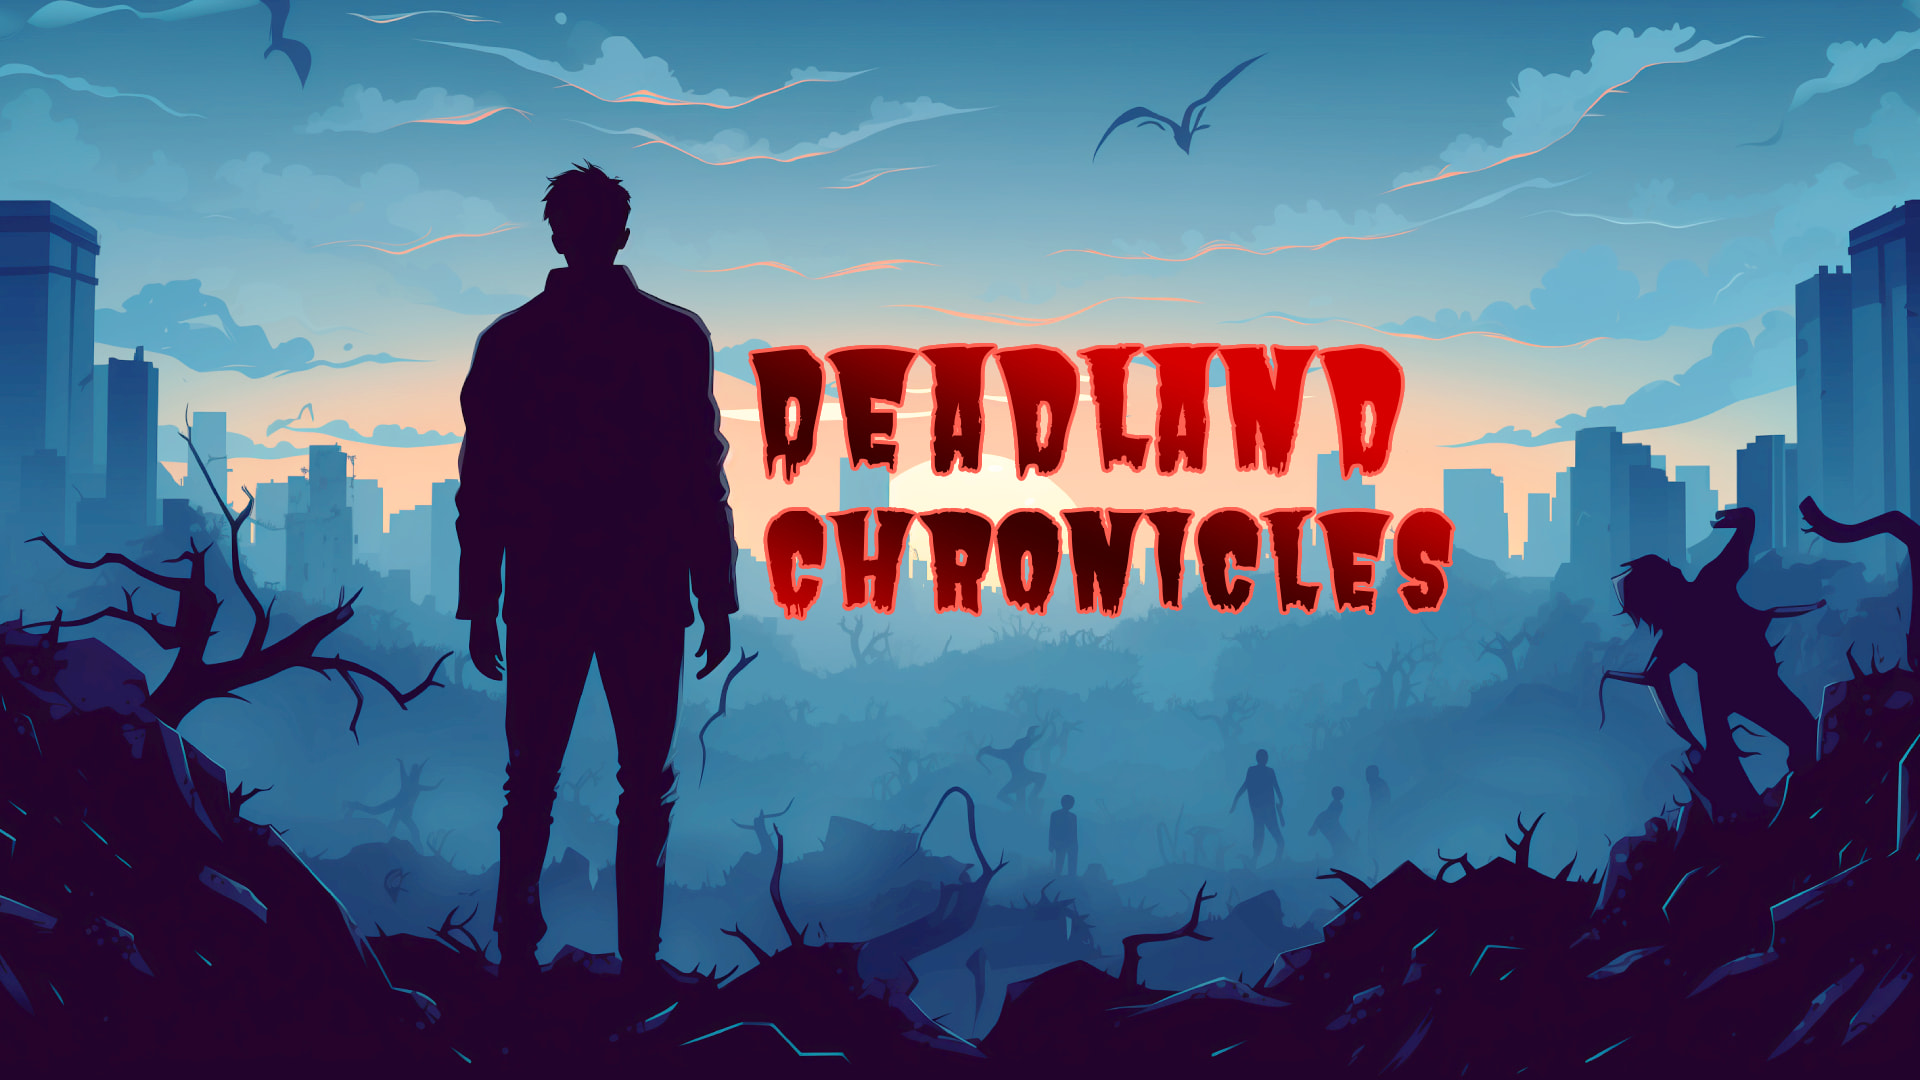 Deadland Chronicles